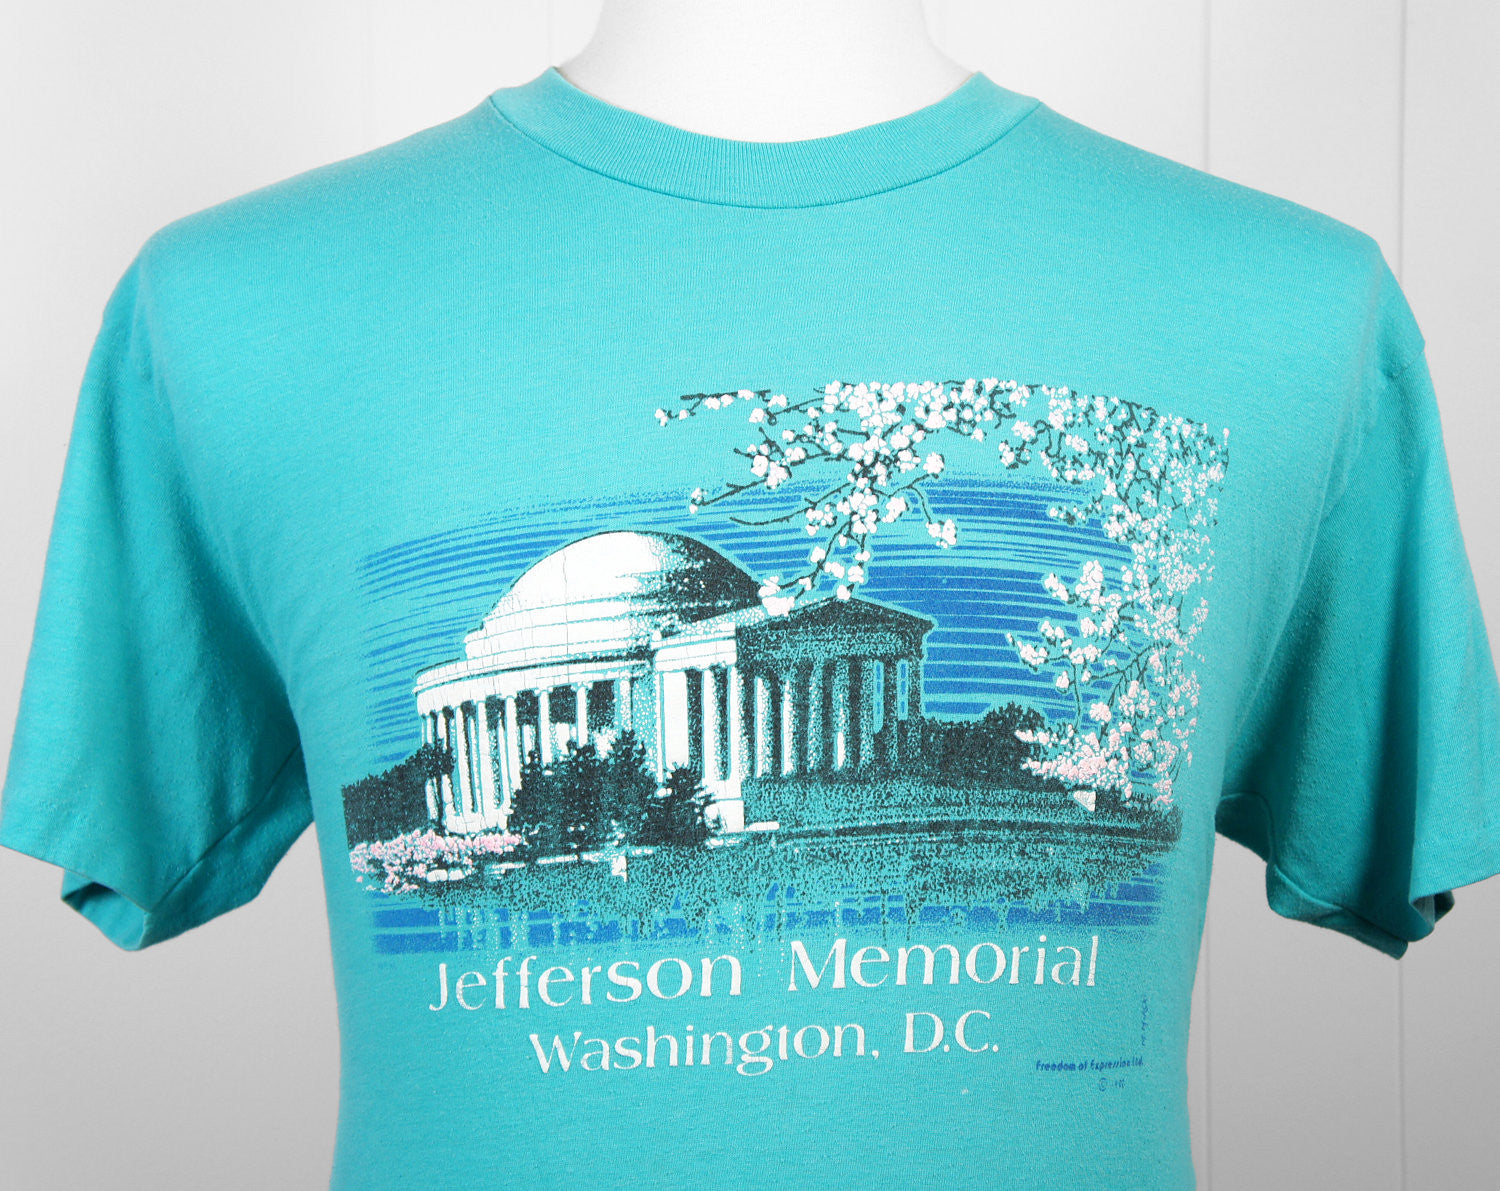 1980's Washington D.C. Monument T-Shirt - Size L